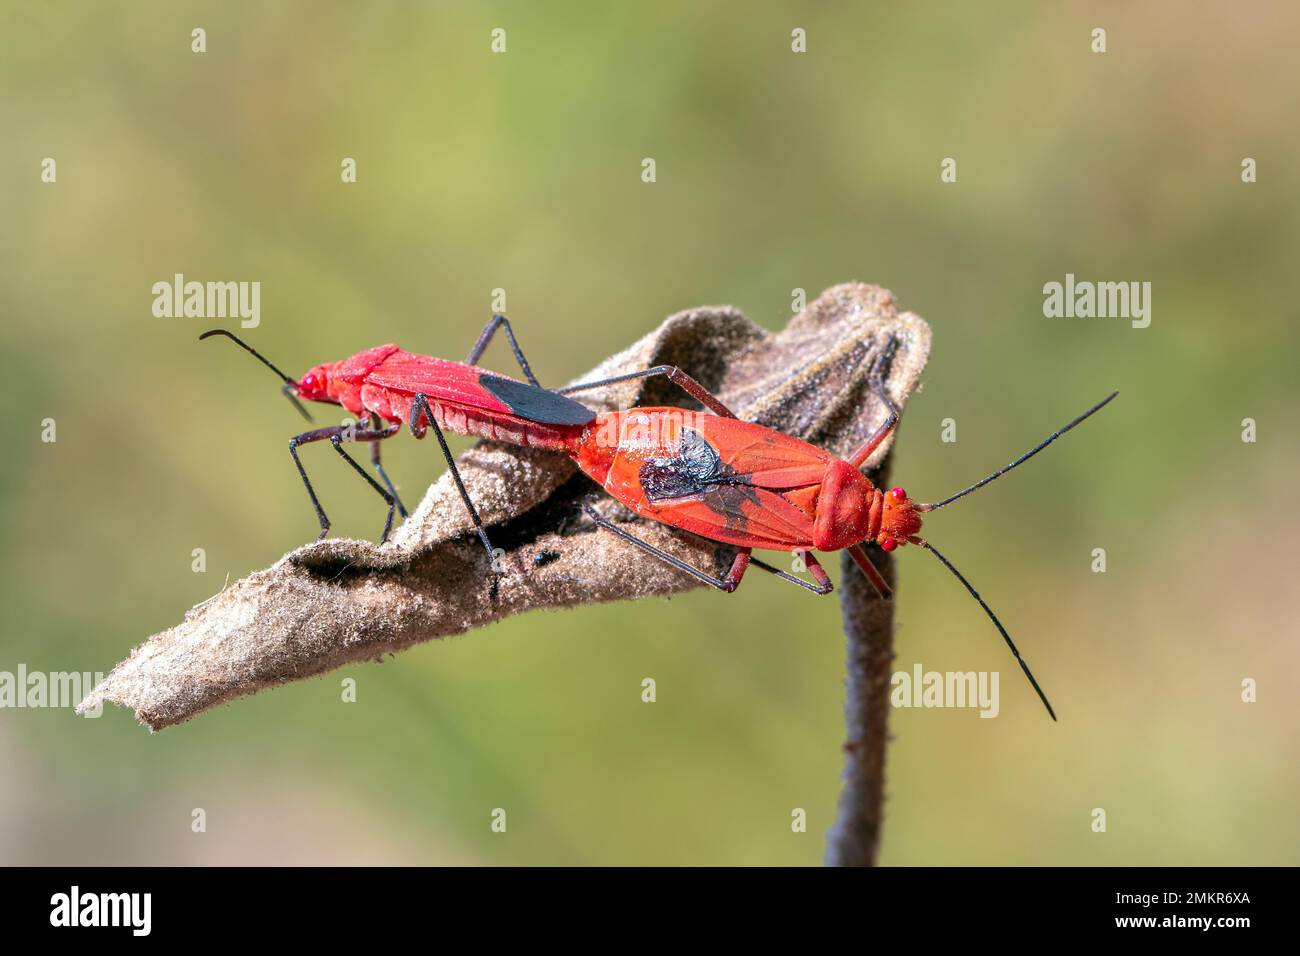 Image d'un insecte de coton rouge (Dysdercus cingulatus) sur la feuille sur fond naturel. Insecte. Animal. Pyrrhocoridae. Banque D'Images